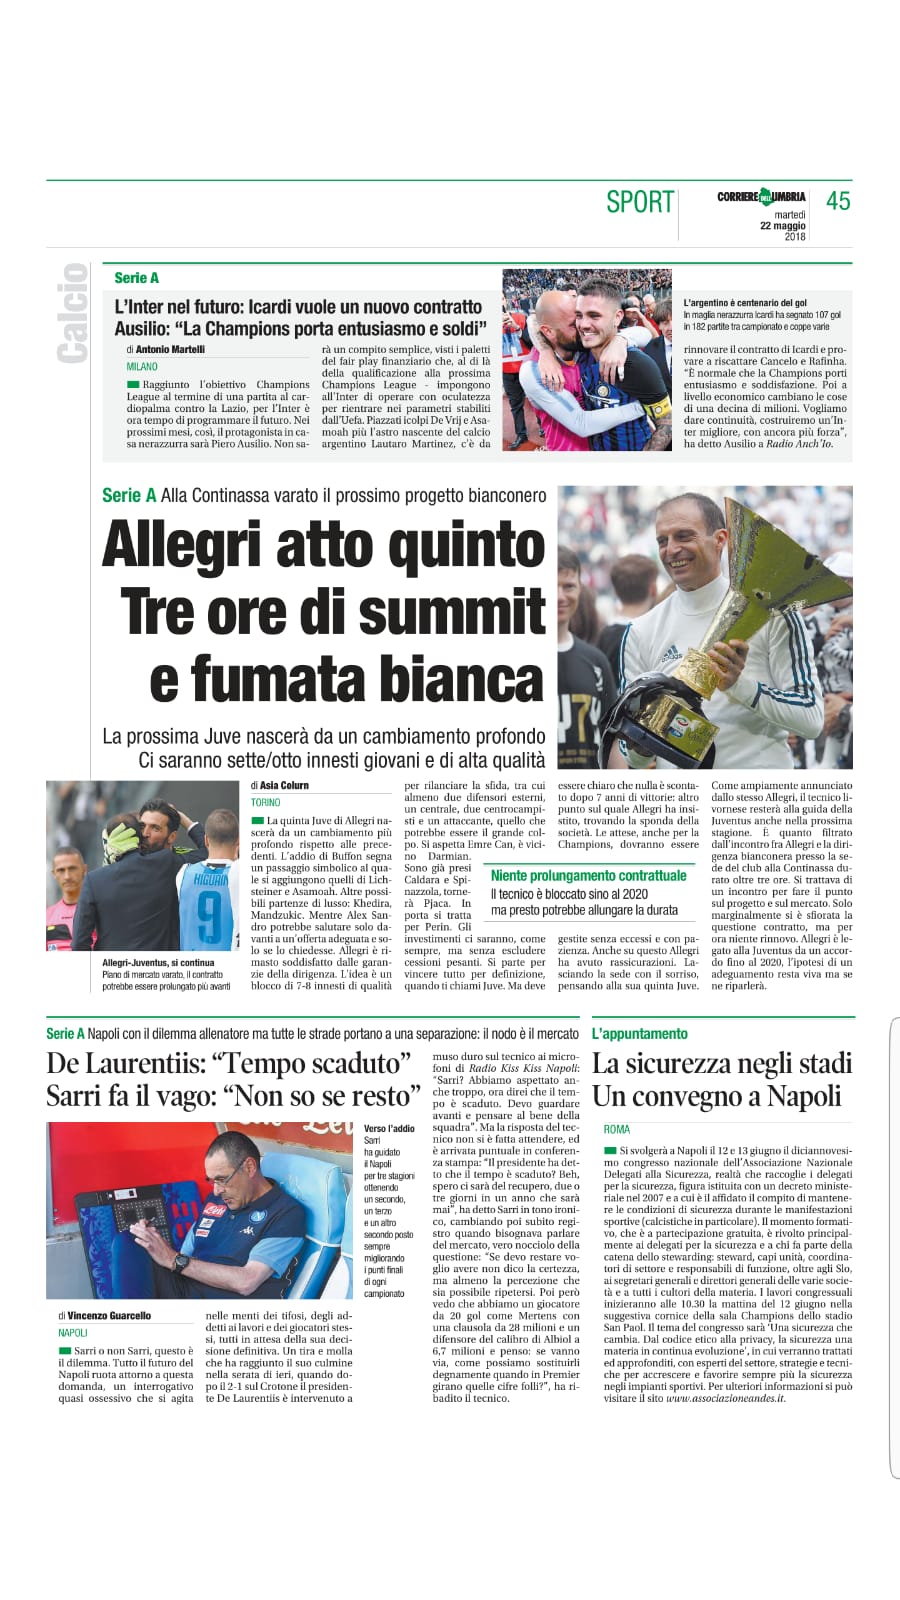 Corriere nazionale convegno Napoli.jpg